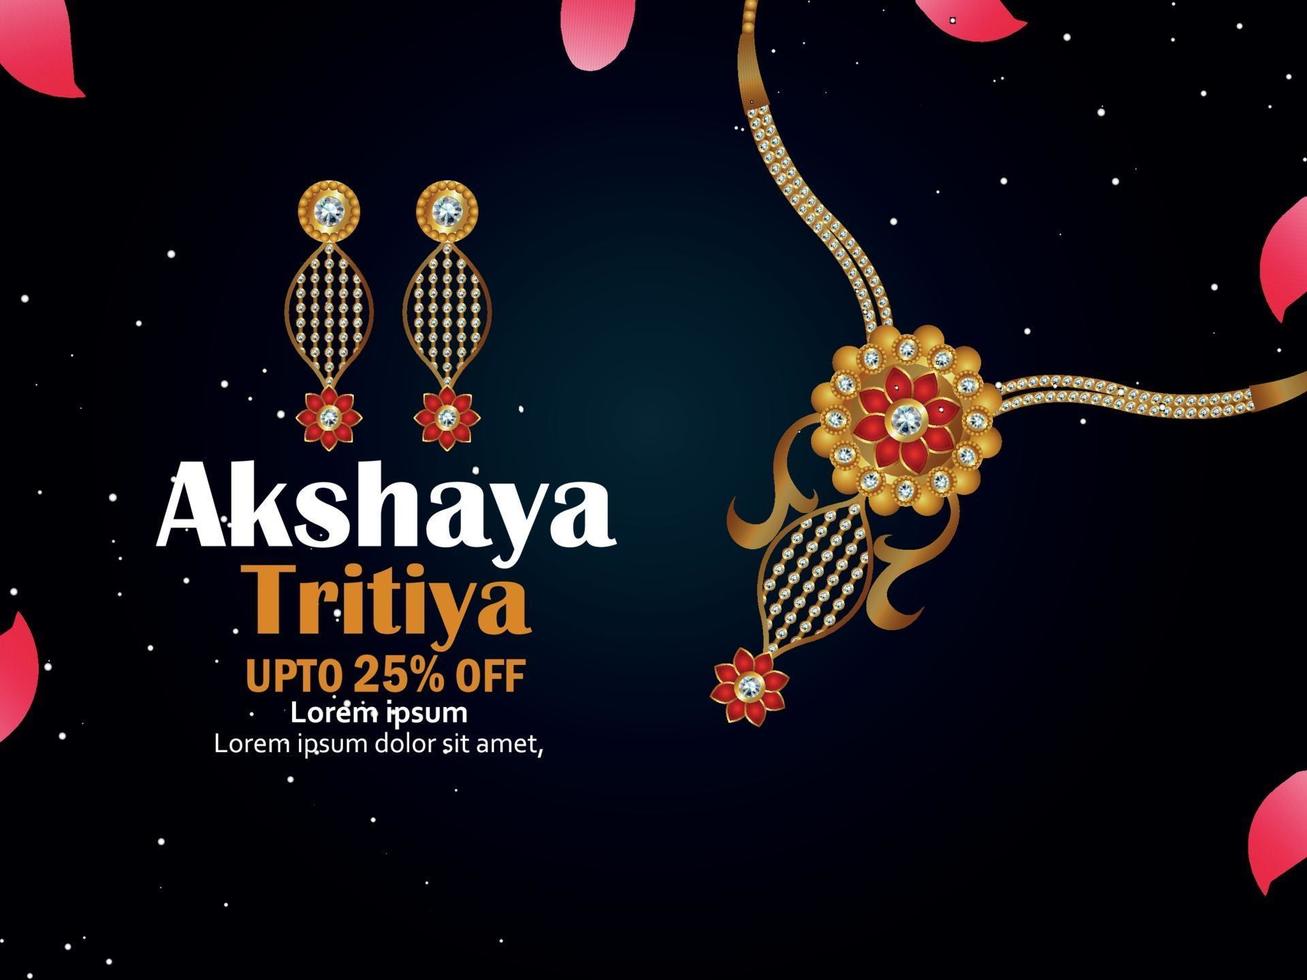 vectorillustratie van akshaya tritiya viering sieraden. verkooppromotie wenskaart met creatieve ketting en oorbellen vector